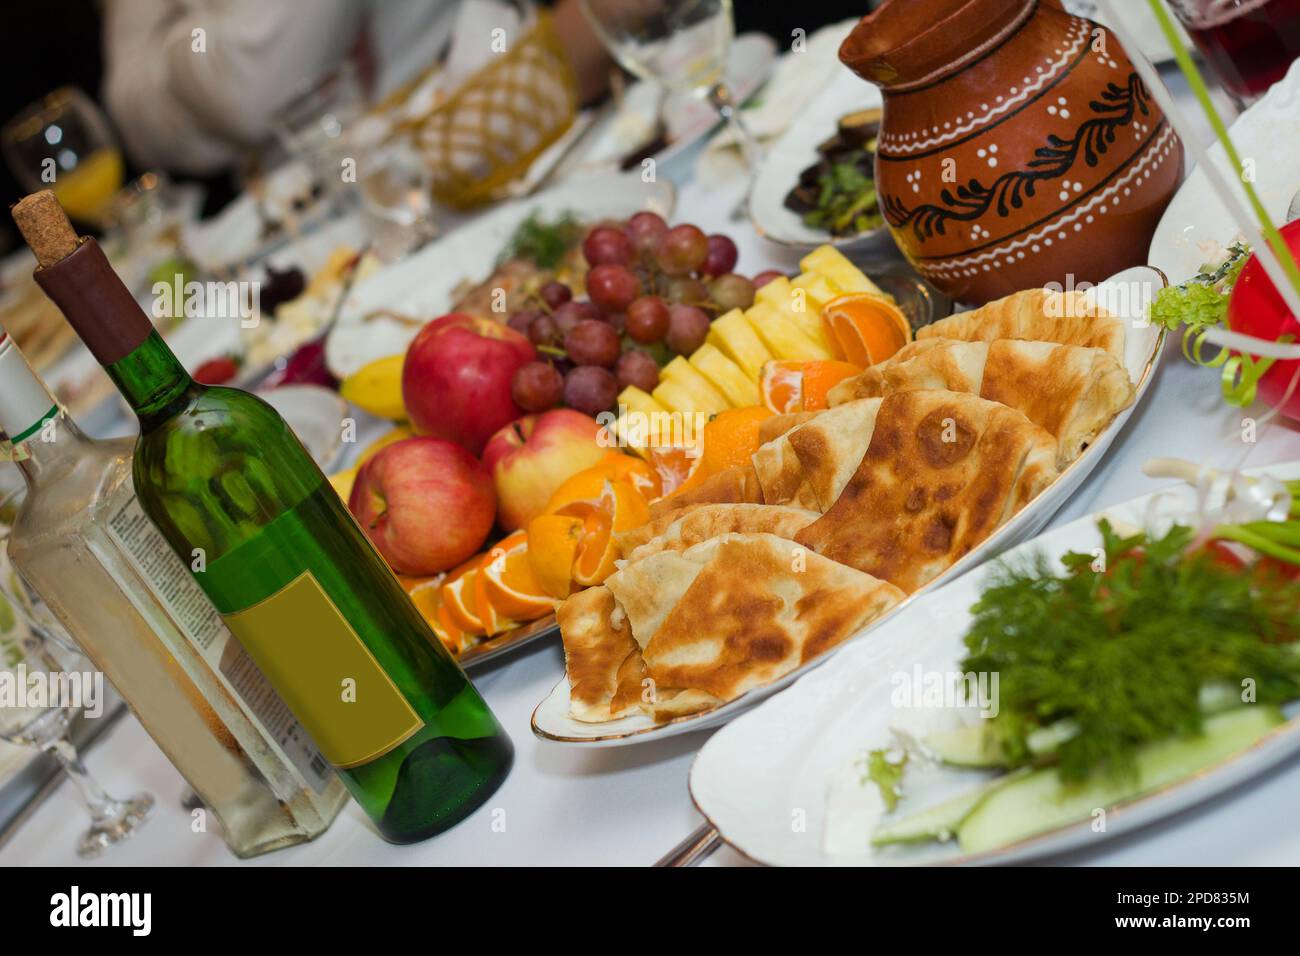 Wunderschöner Banketttisch mit Speisen und Getränken. Wein, Snacks, Obst und andere Speisen stehen auf dem Tisch Stockfoto